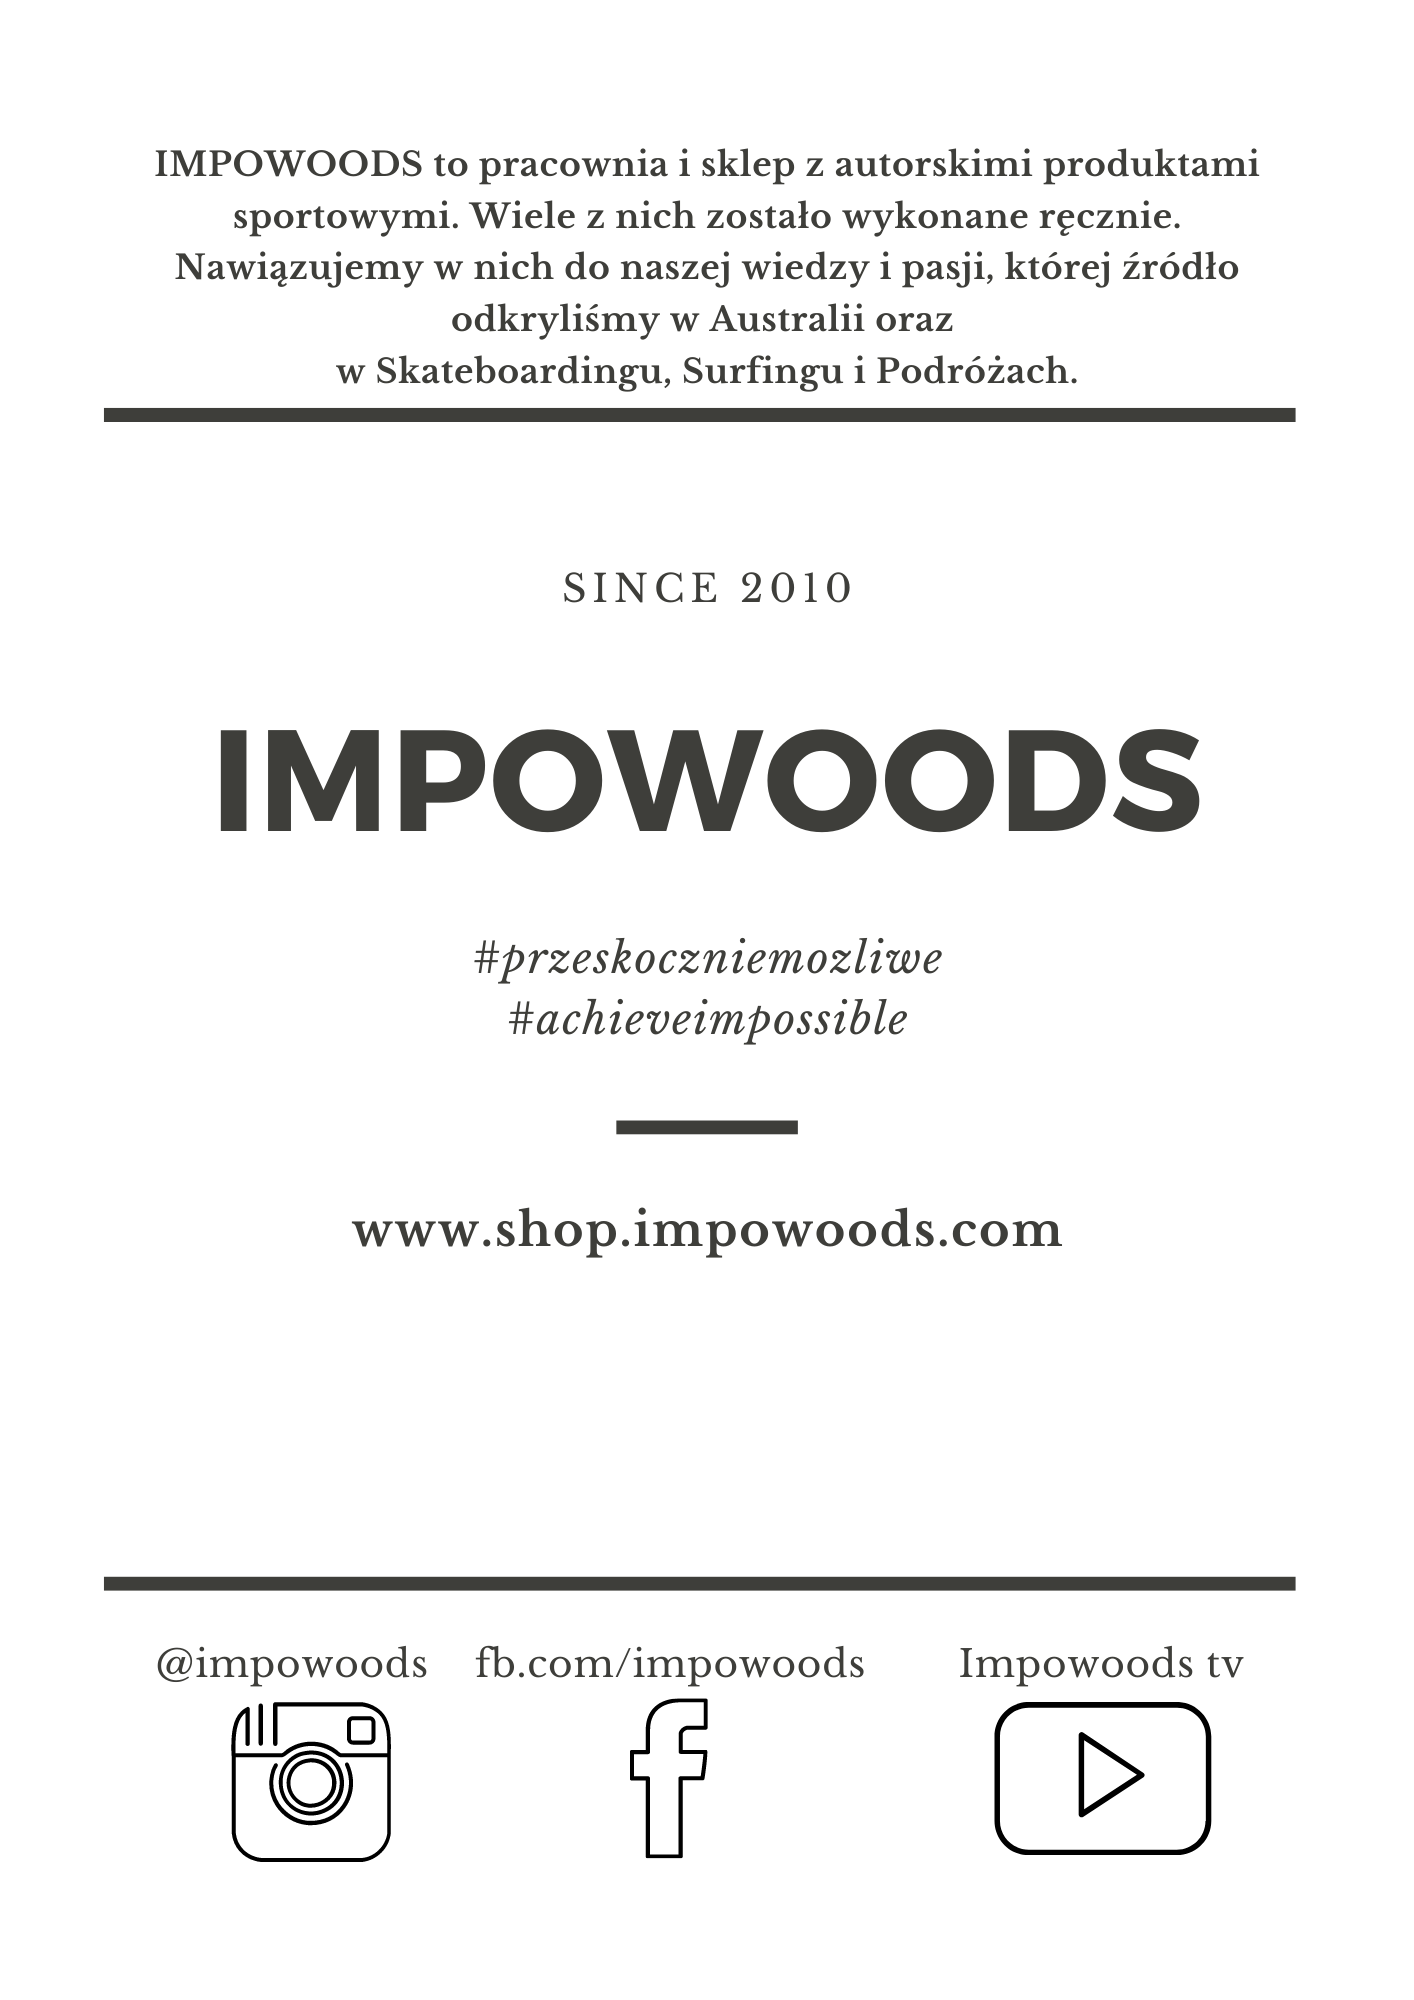 Impowoods - workshop & skateshop